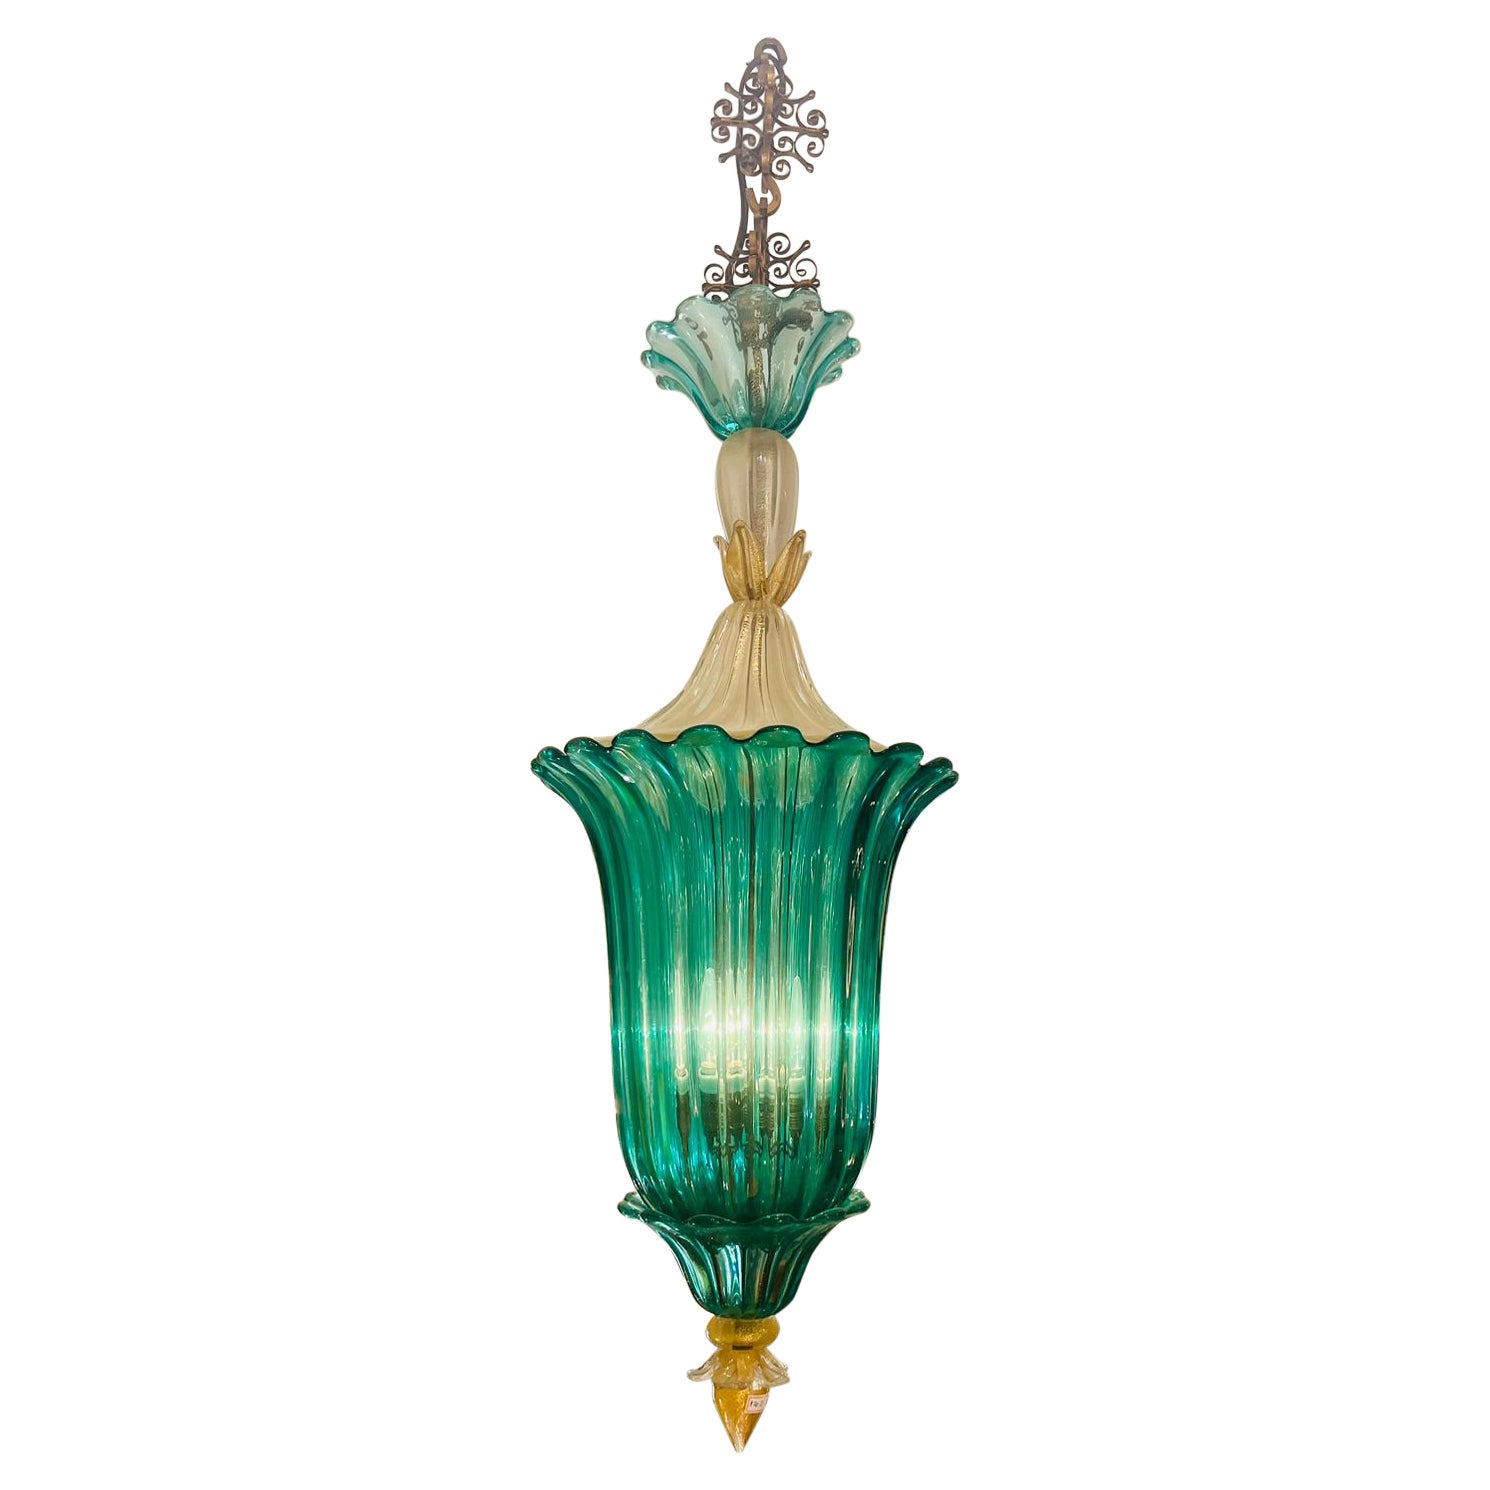 Archimede Seguso Murano glass "costolato oro" circa 1950 chandelier For Sale